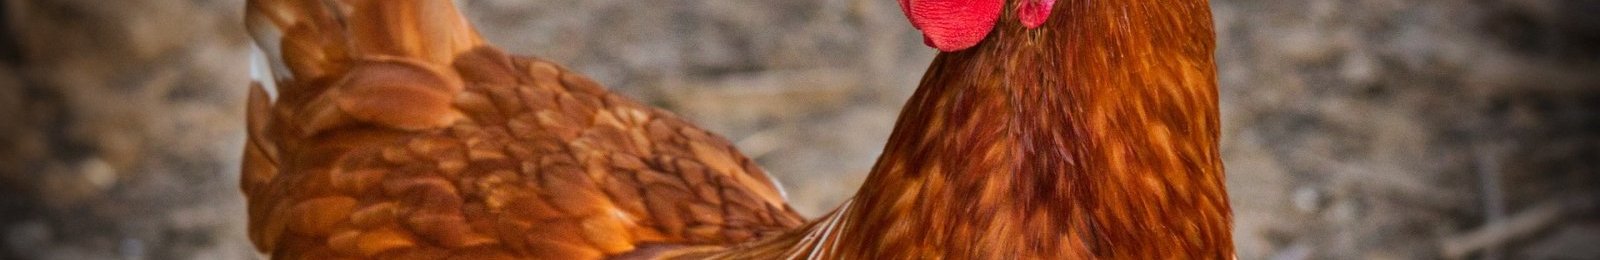 Influenza aviaire : opération d’abattage dans un élevage de poules pondeuses